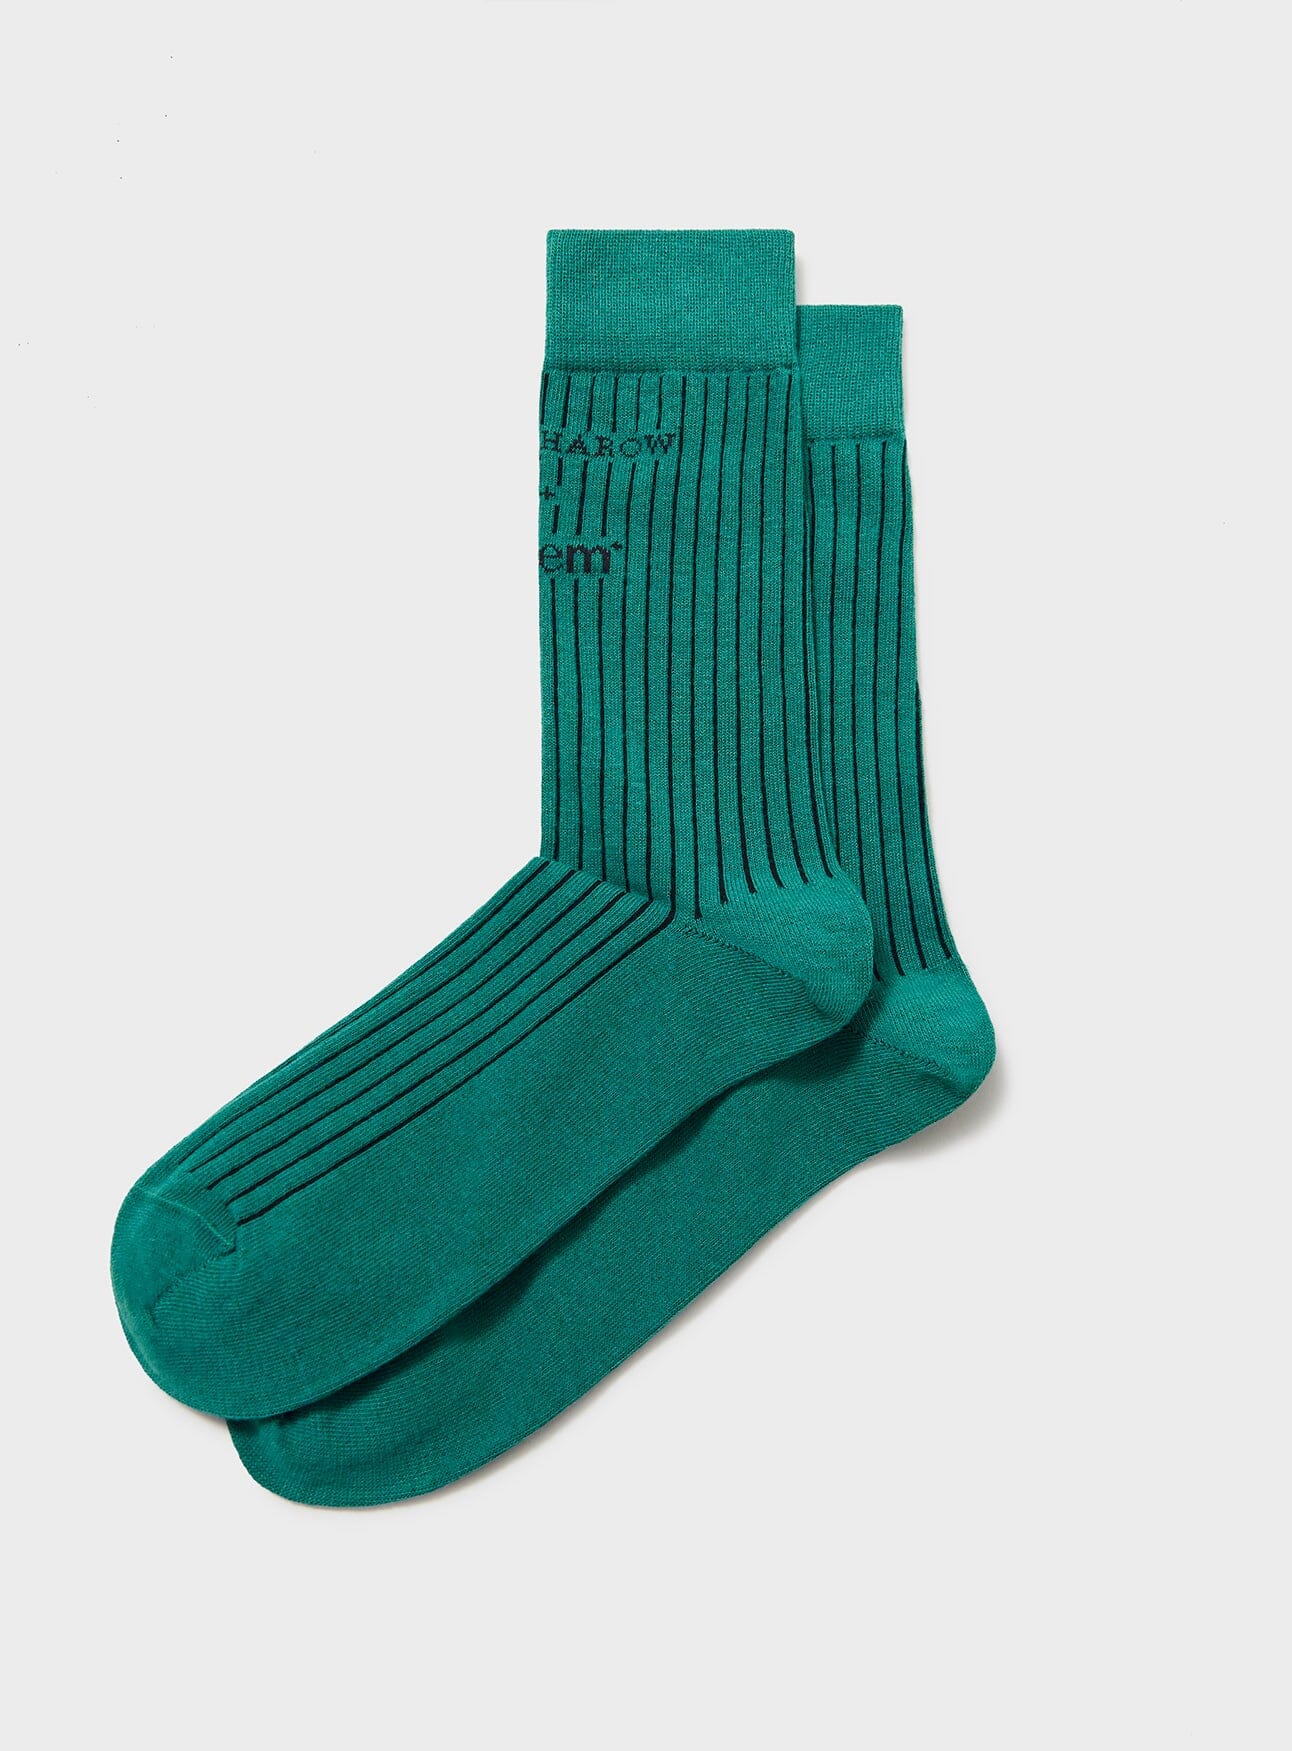 Recycled Men's Socks - Green Neem London 